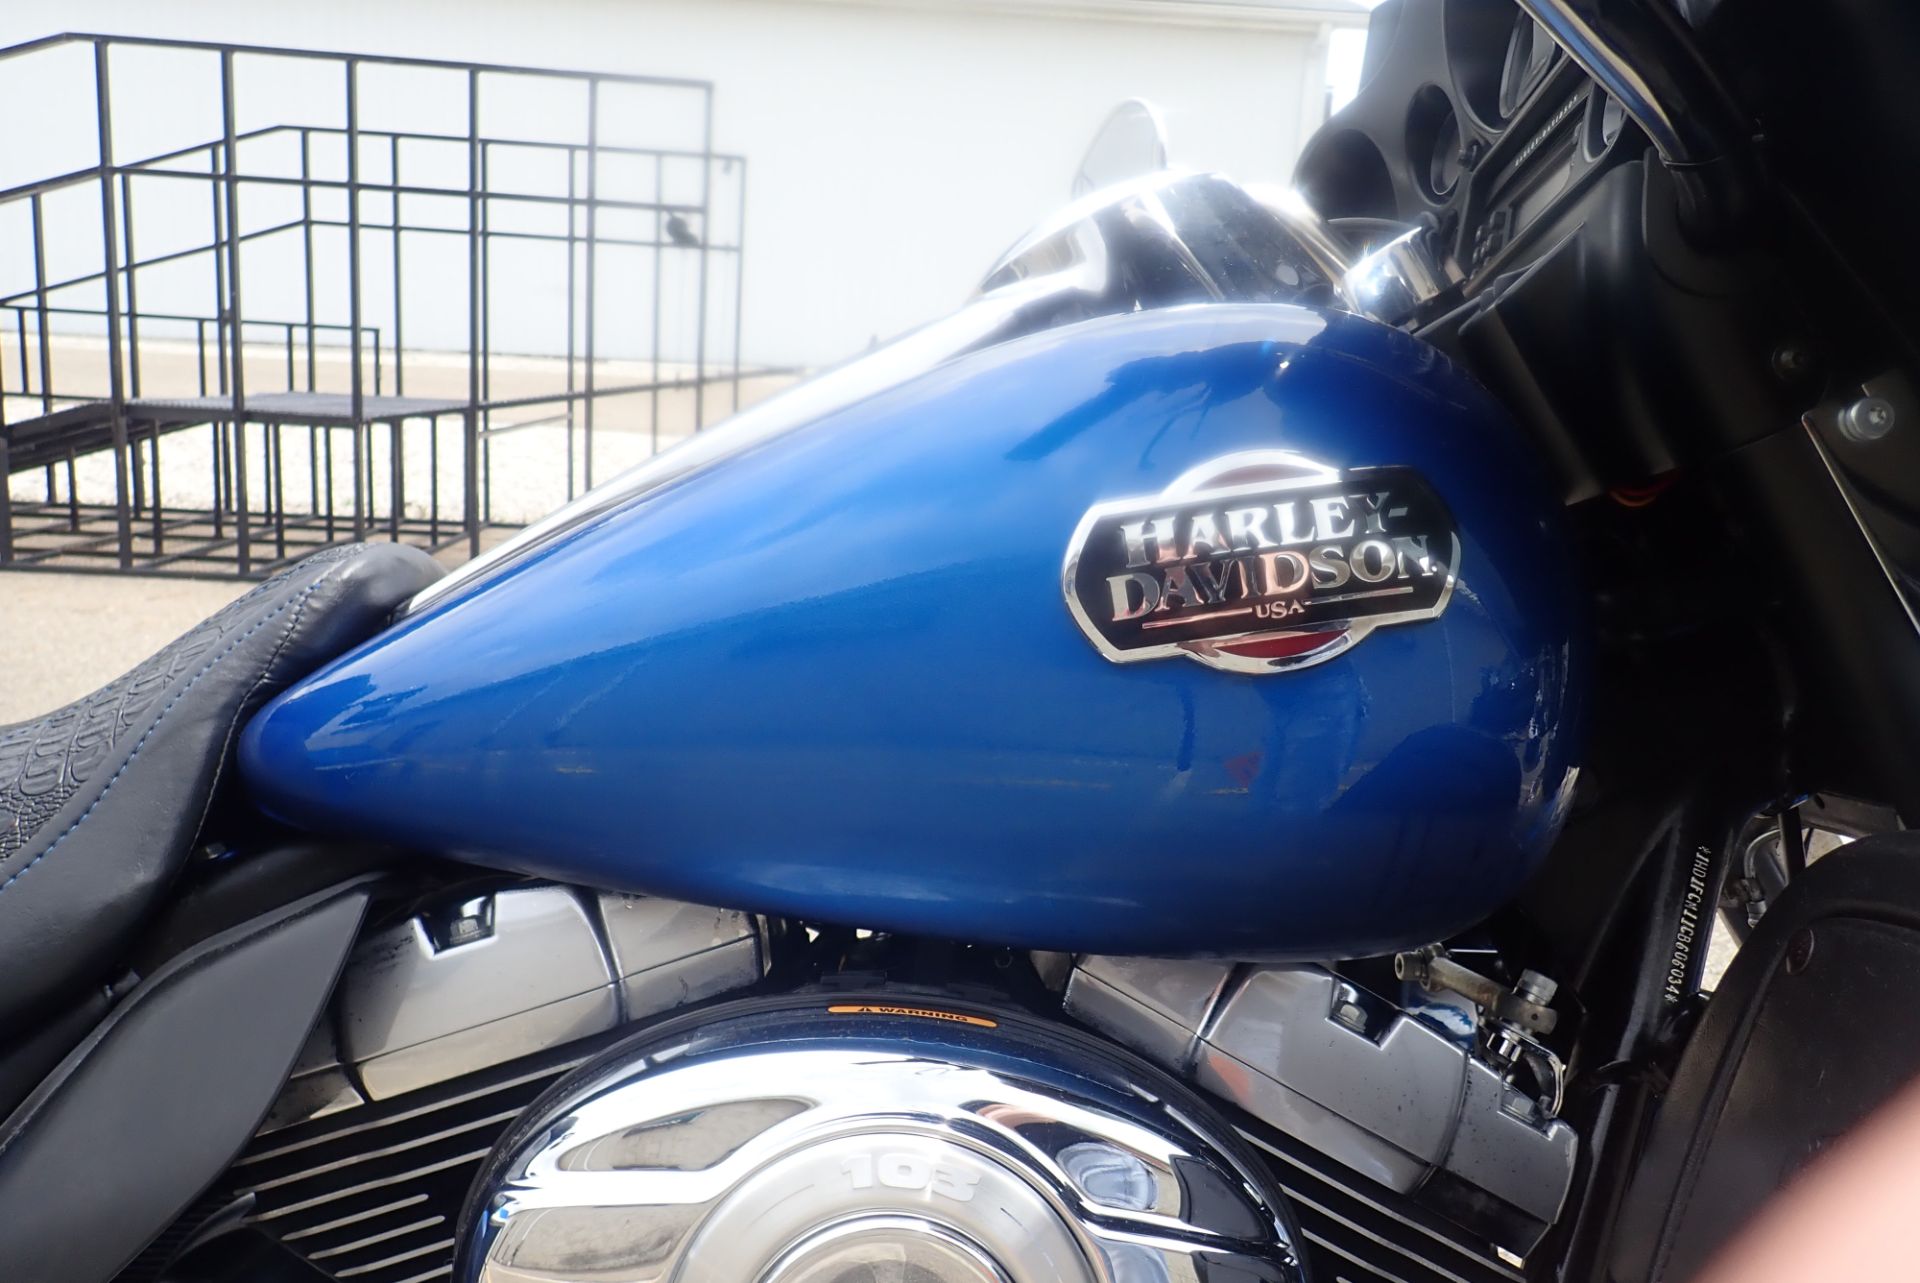 2012 Harley-Davidson Ultra Classic® Electra Glide® in Massillon, Ohio - Photo 3